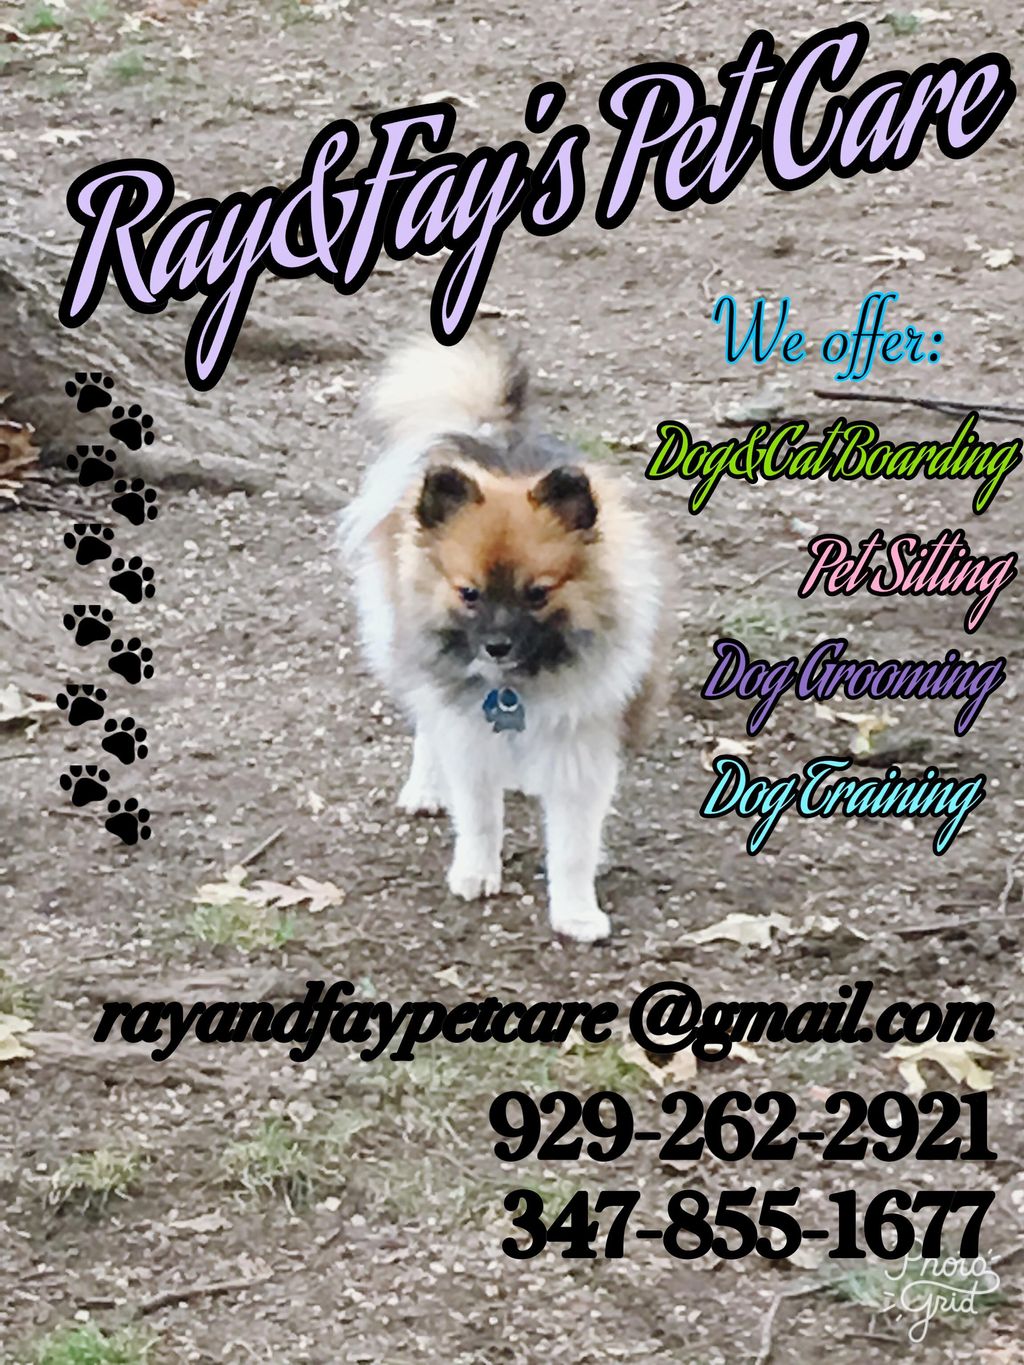 Ray&Fay's Pet Care